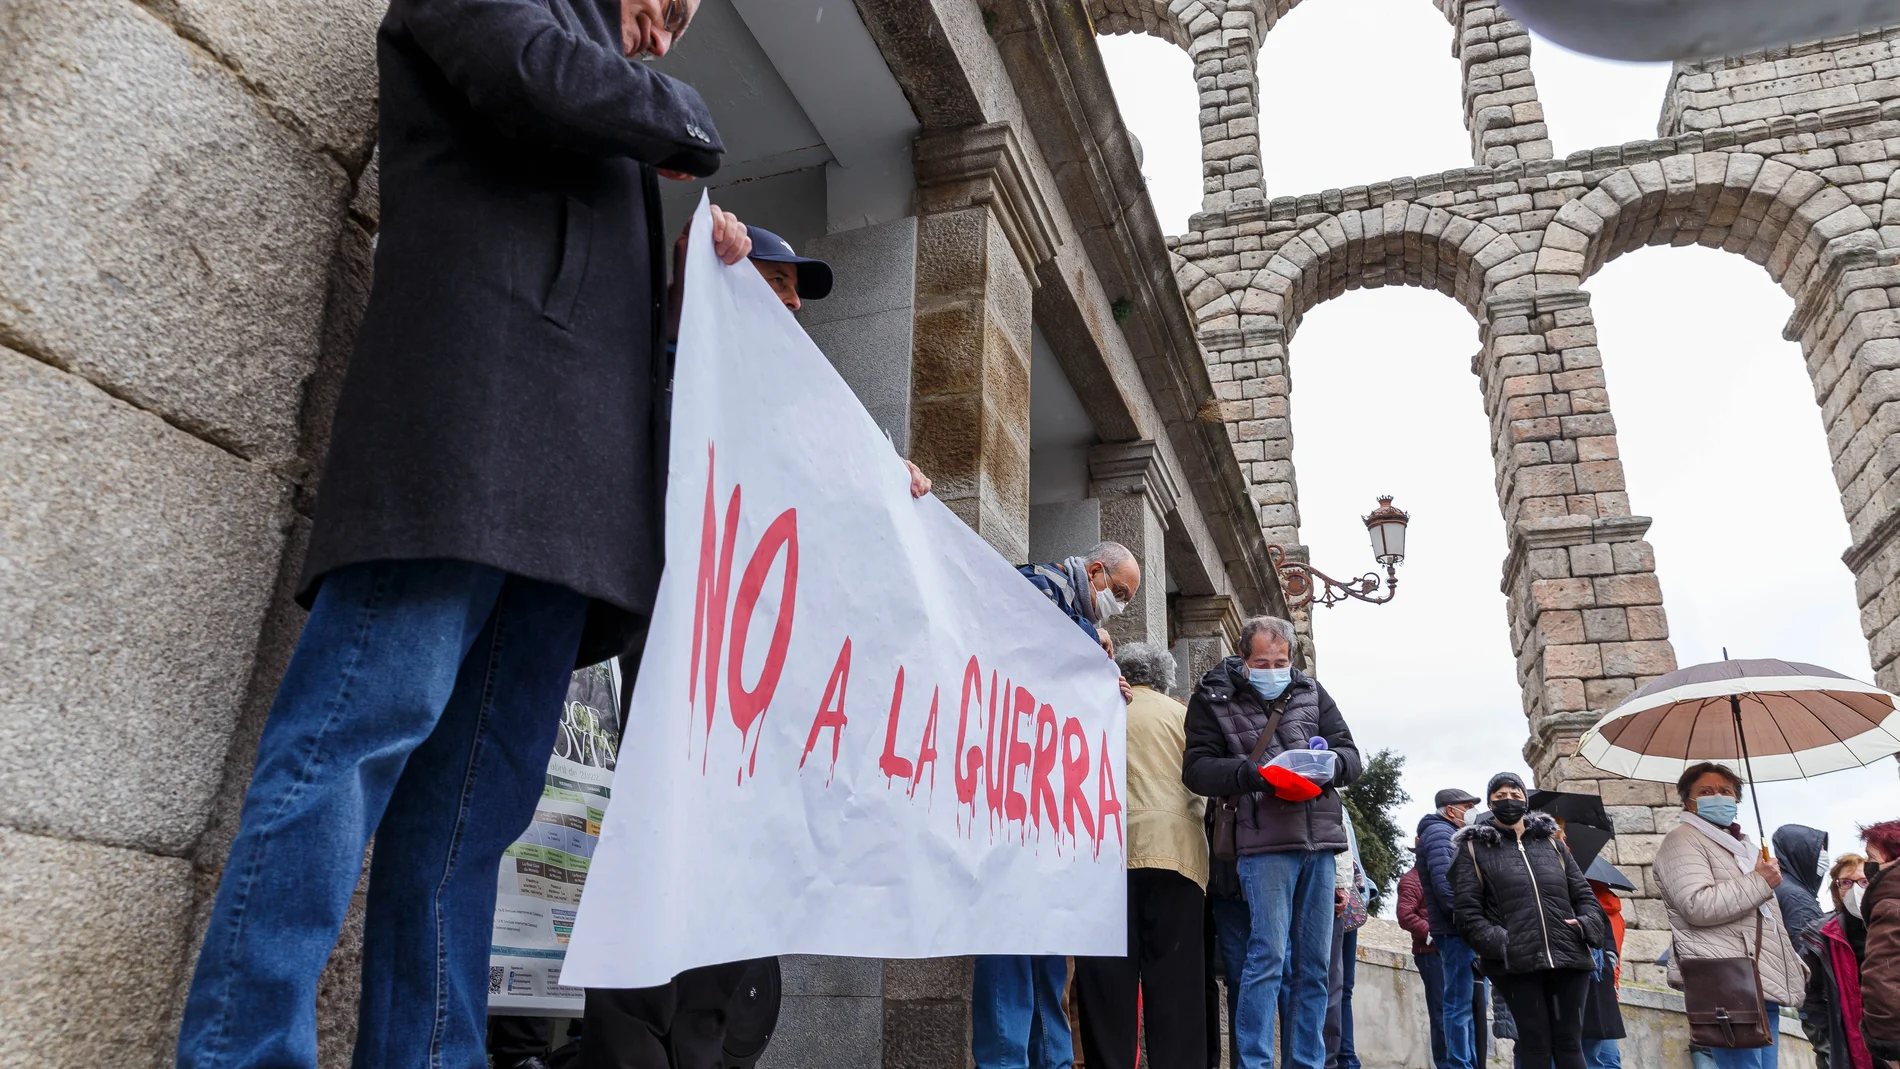 El Foro Social de Segovia convoca una concentración bajo el lema "No a la Guerra"